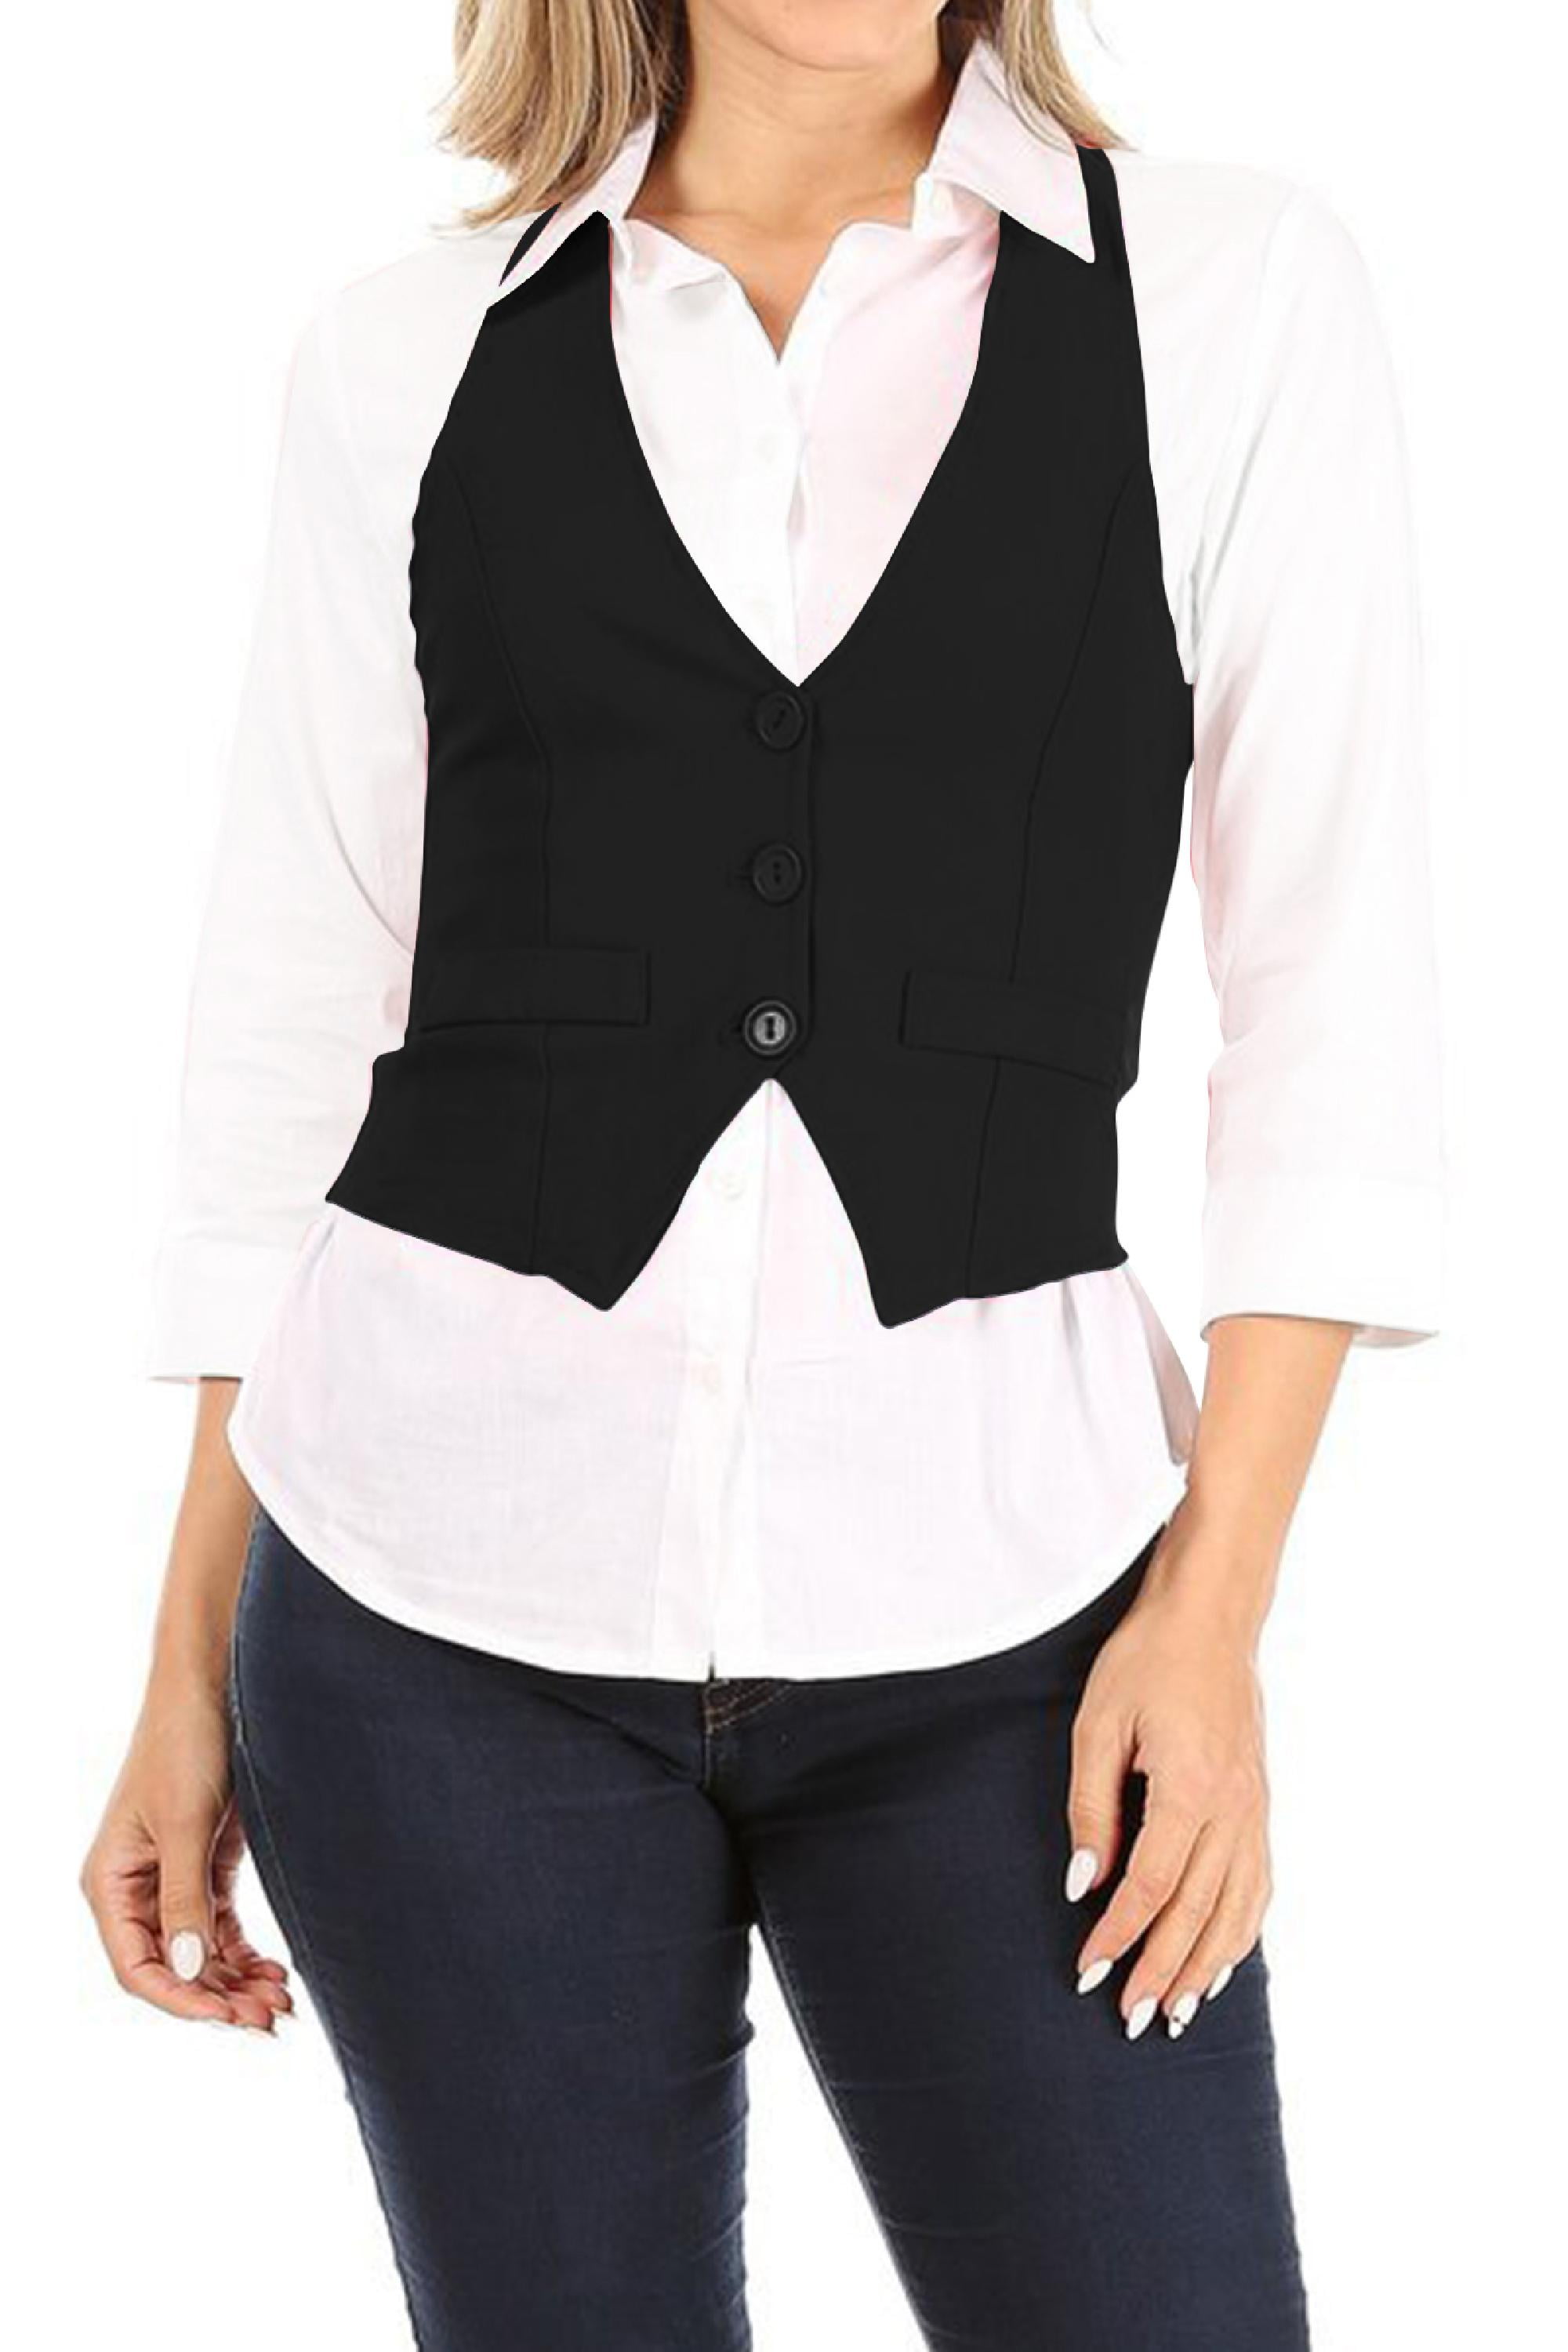 MOA COLLECTION Women's Casual Button Down Racerback Belt Slim Tuxedo Suit  Vest Top S-3XL (Pack of 2)